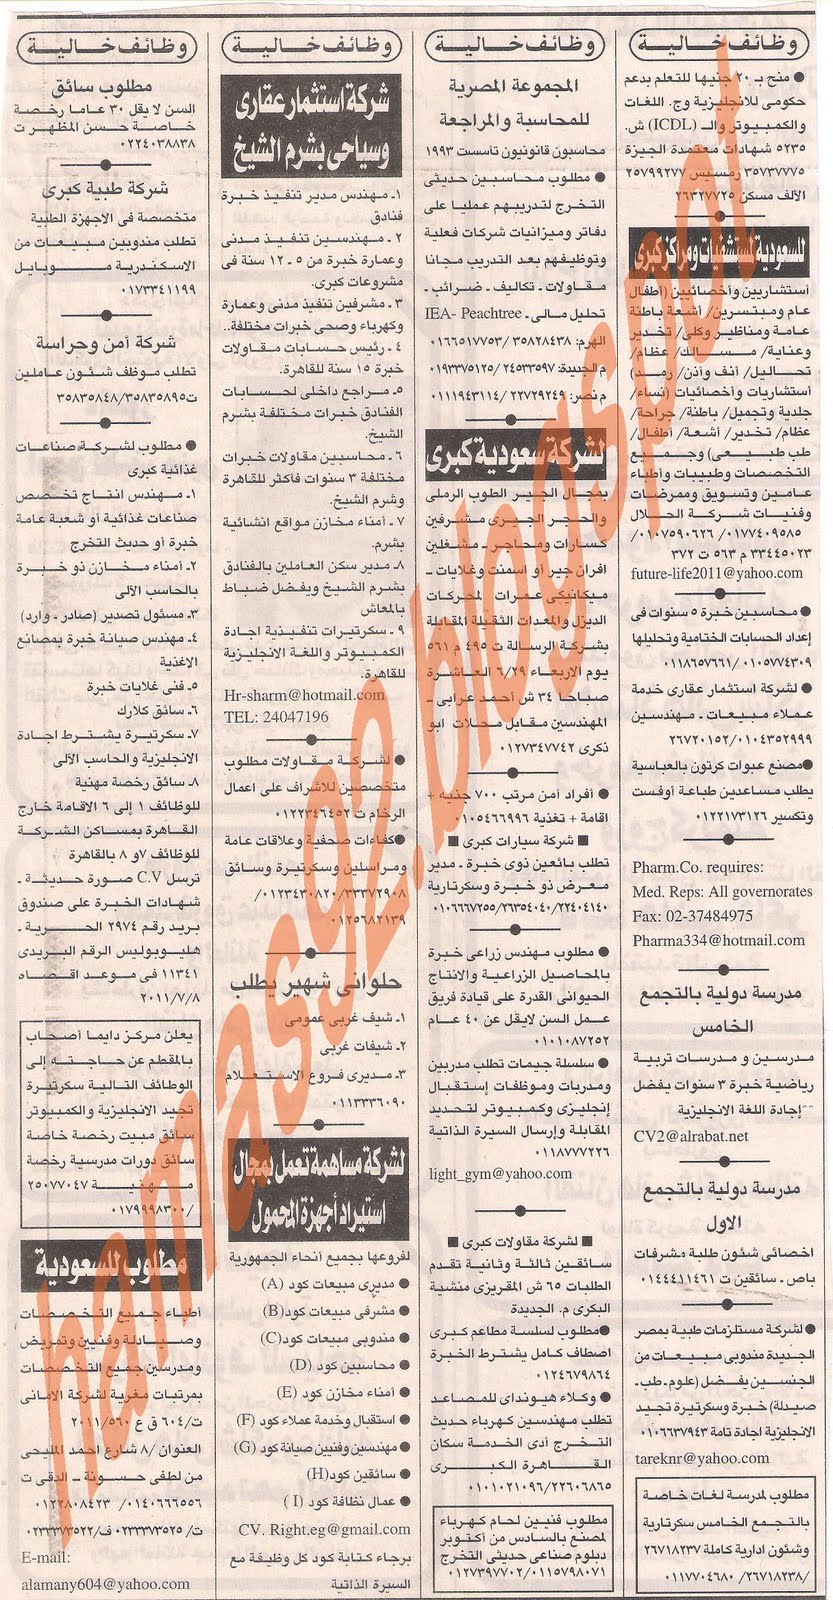 وظائف جريدة اهرام الجمعة 24 يونيو 2011 - الجزء الثانى Picture+005